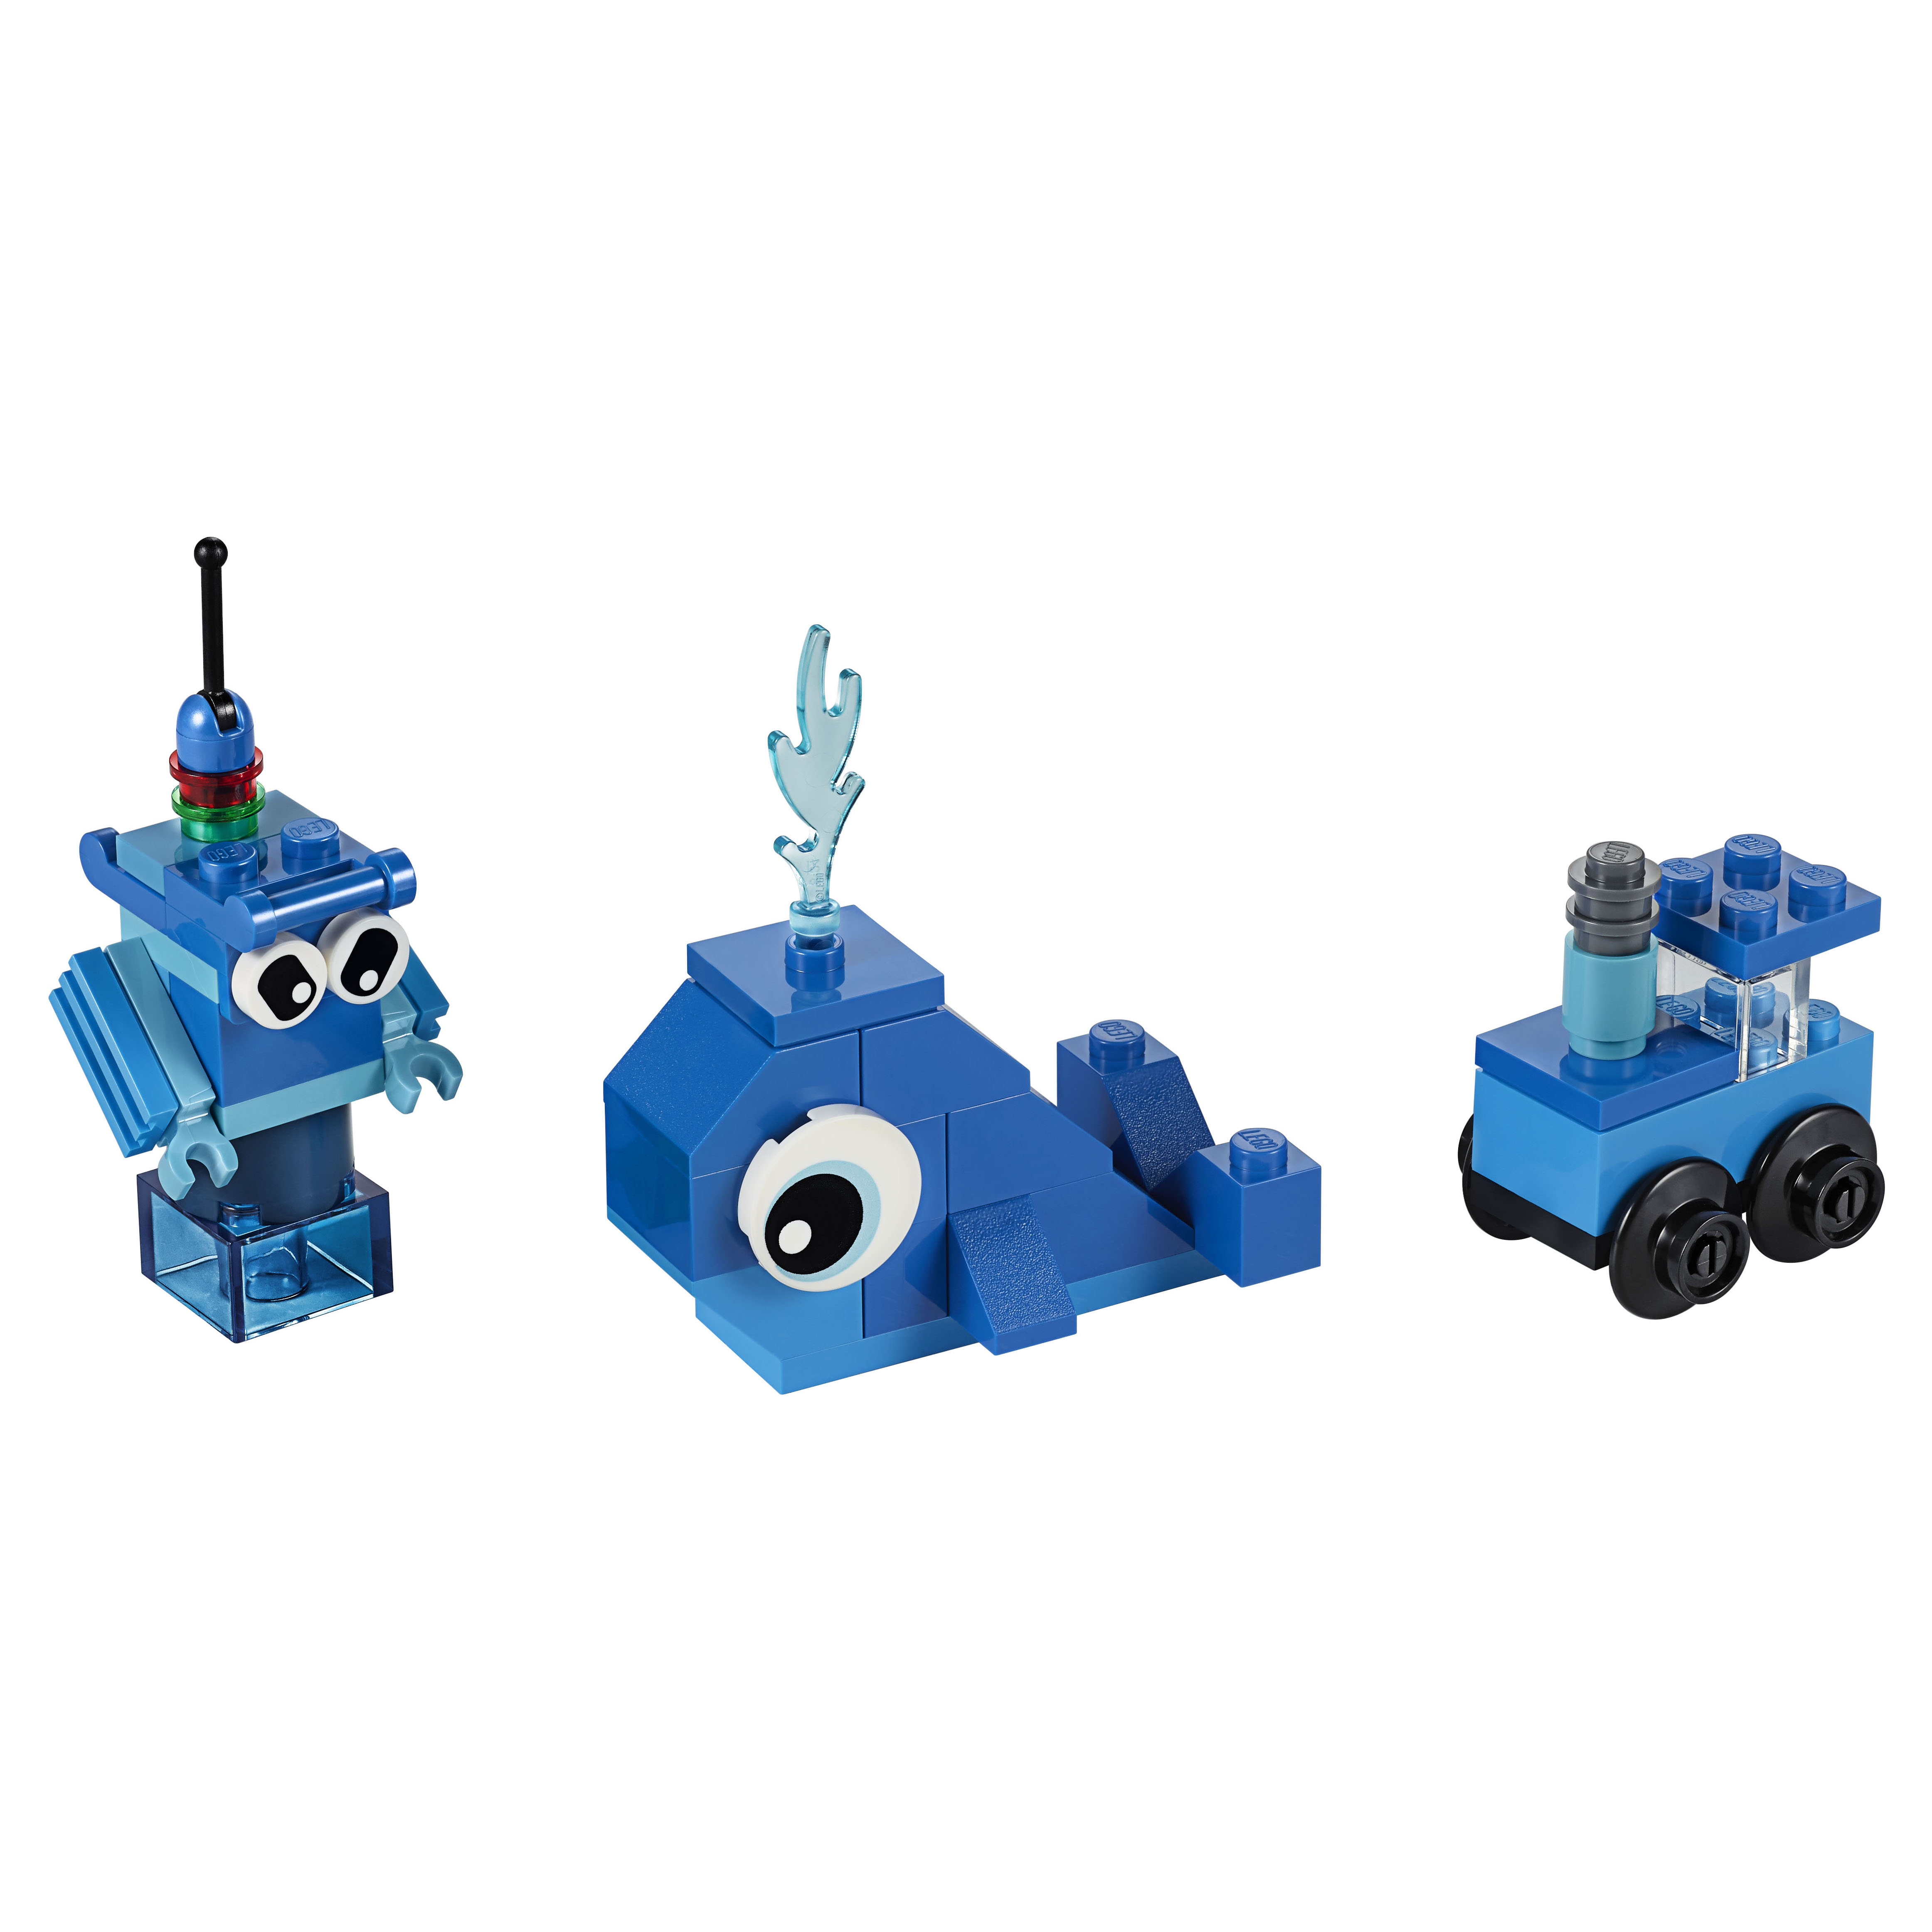 Конструктор LEGO Classic 11006 Синий набор для конструирования поезд brio special edition синий с серебром 33642